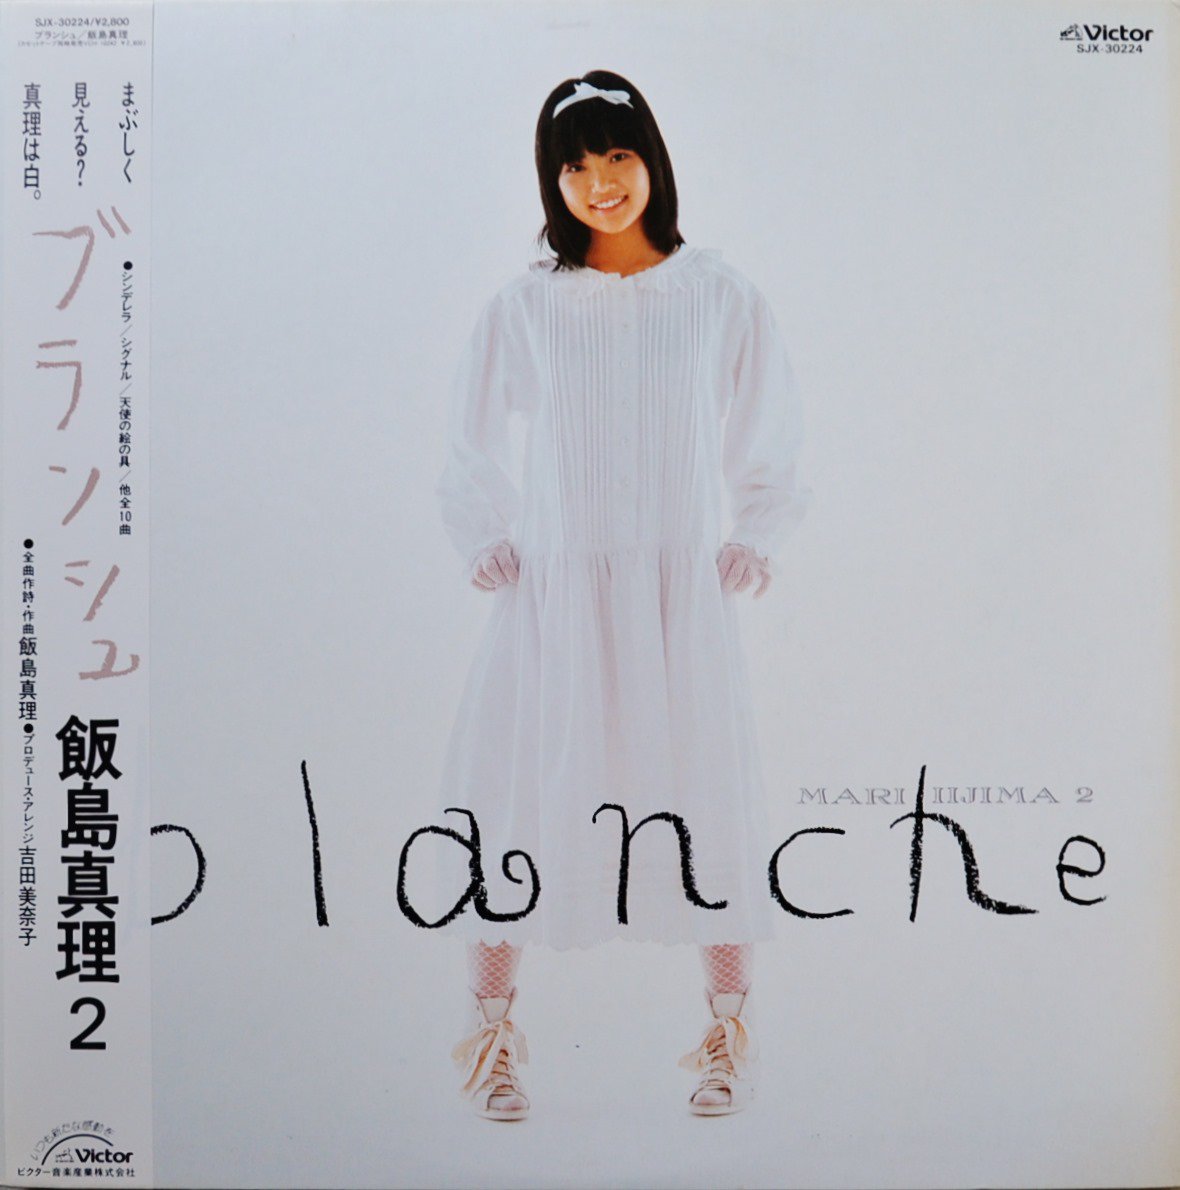 飯島真理 MARI IIJIMA 2 / ブランシュ BLANCHE (PROD BY 吉田美奈子) (LP)